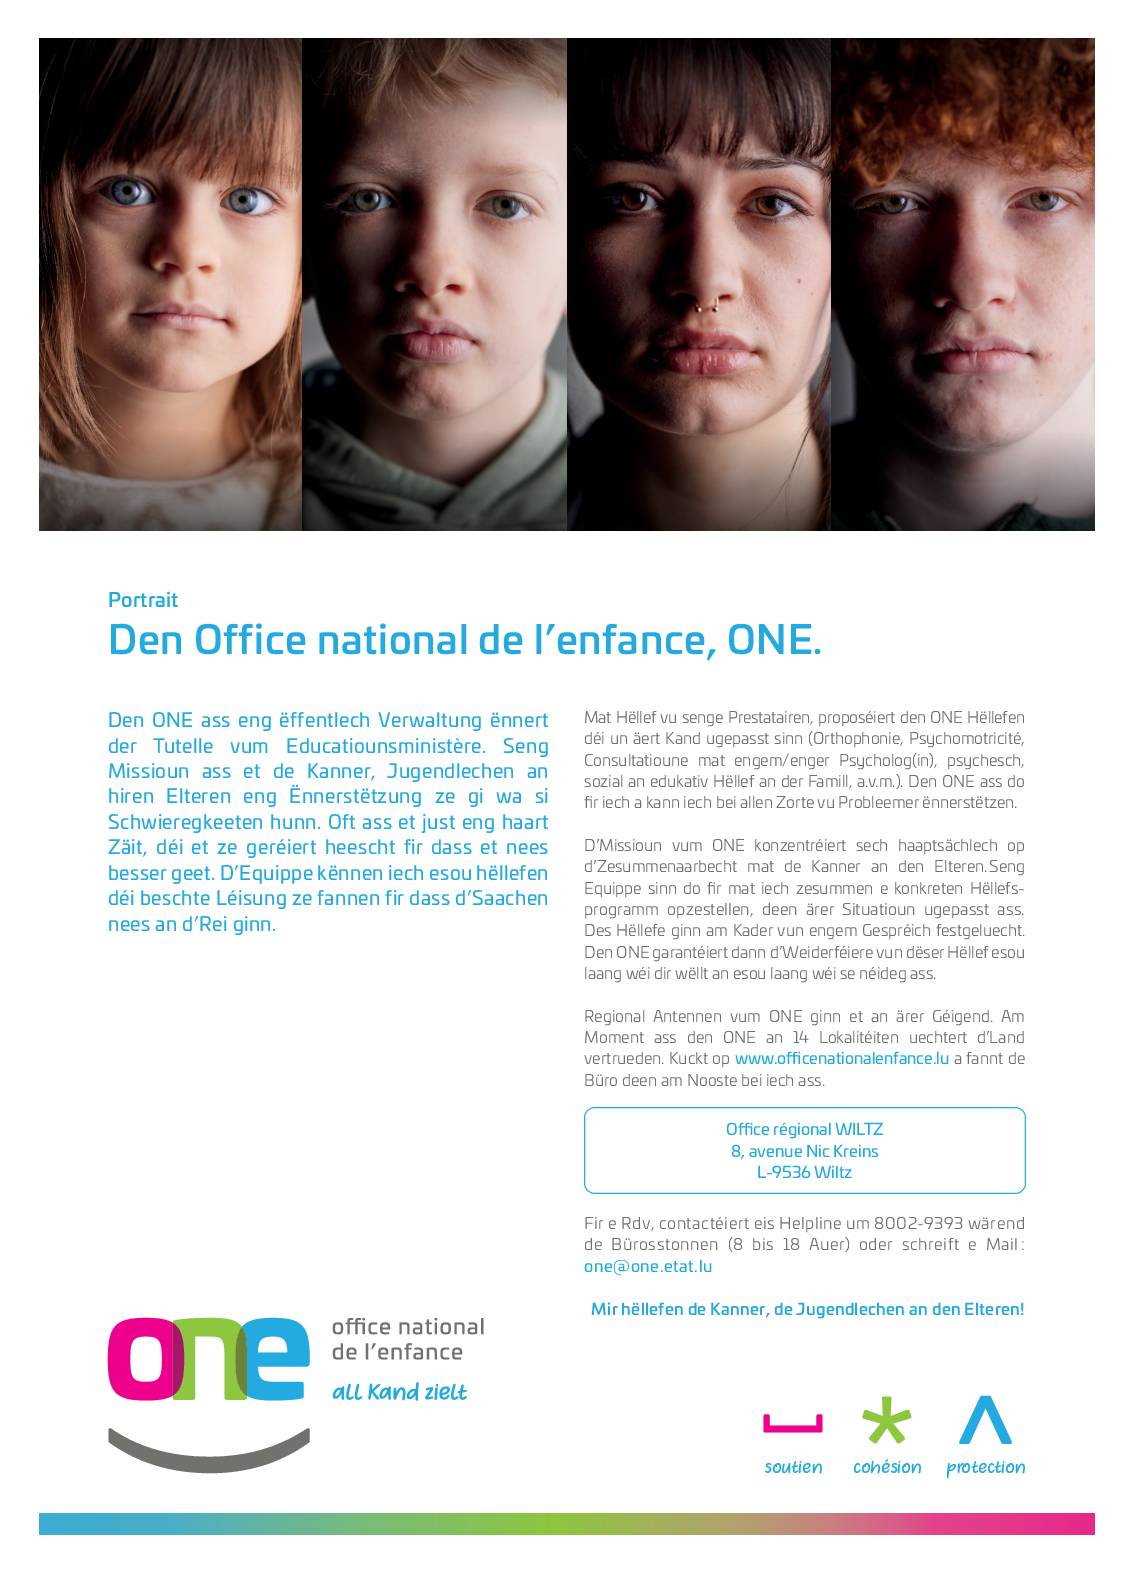 ONE – Office national de l’enfance